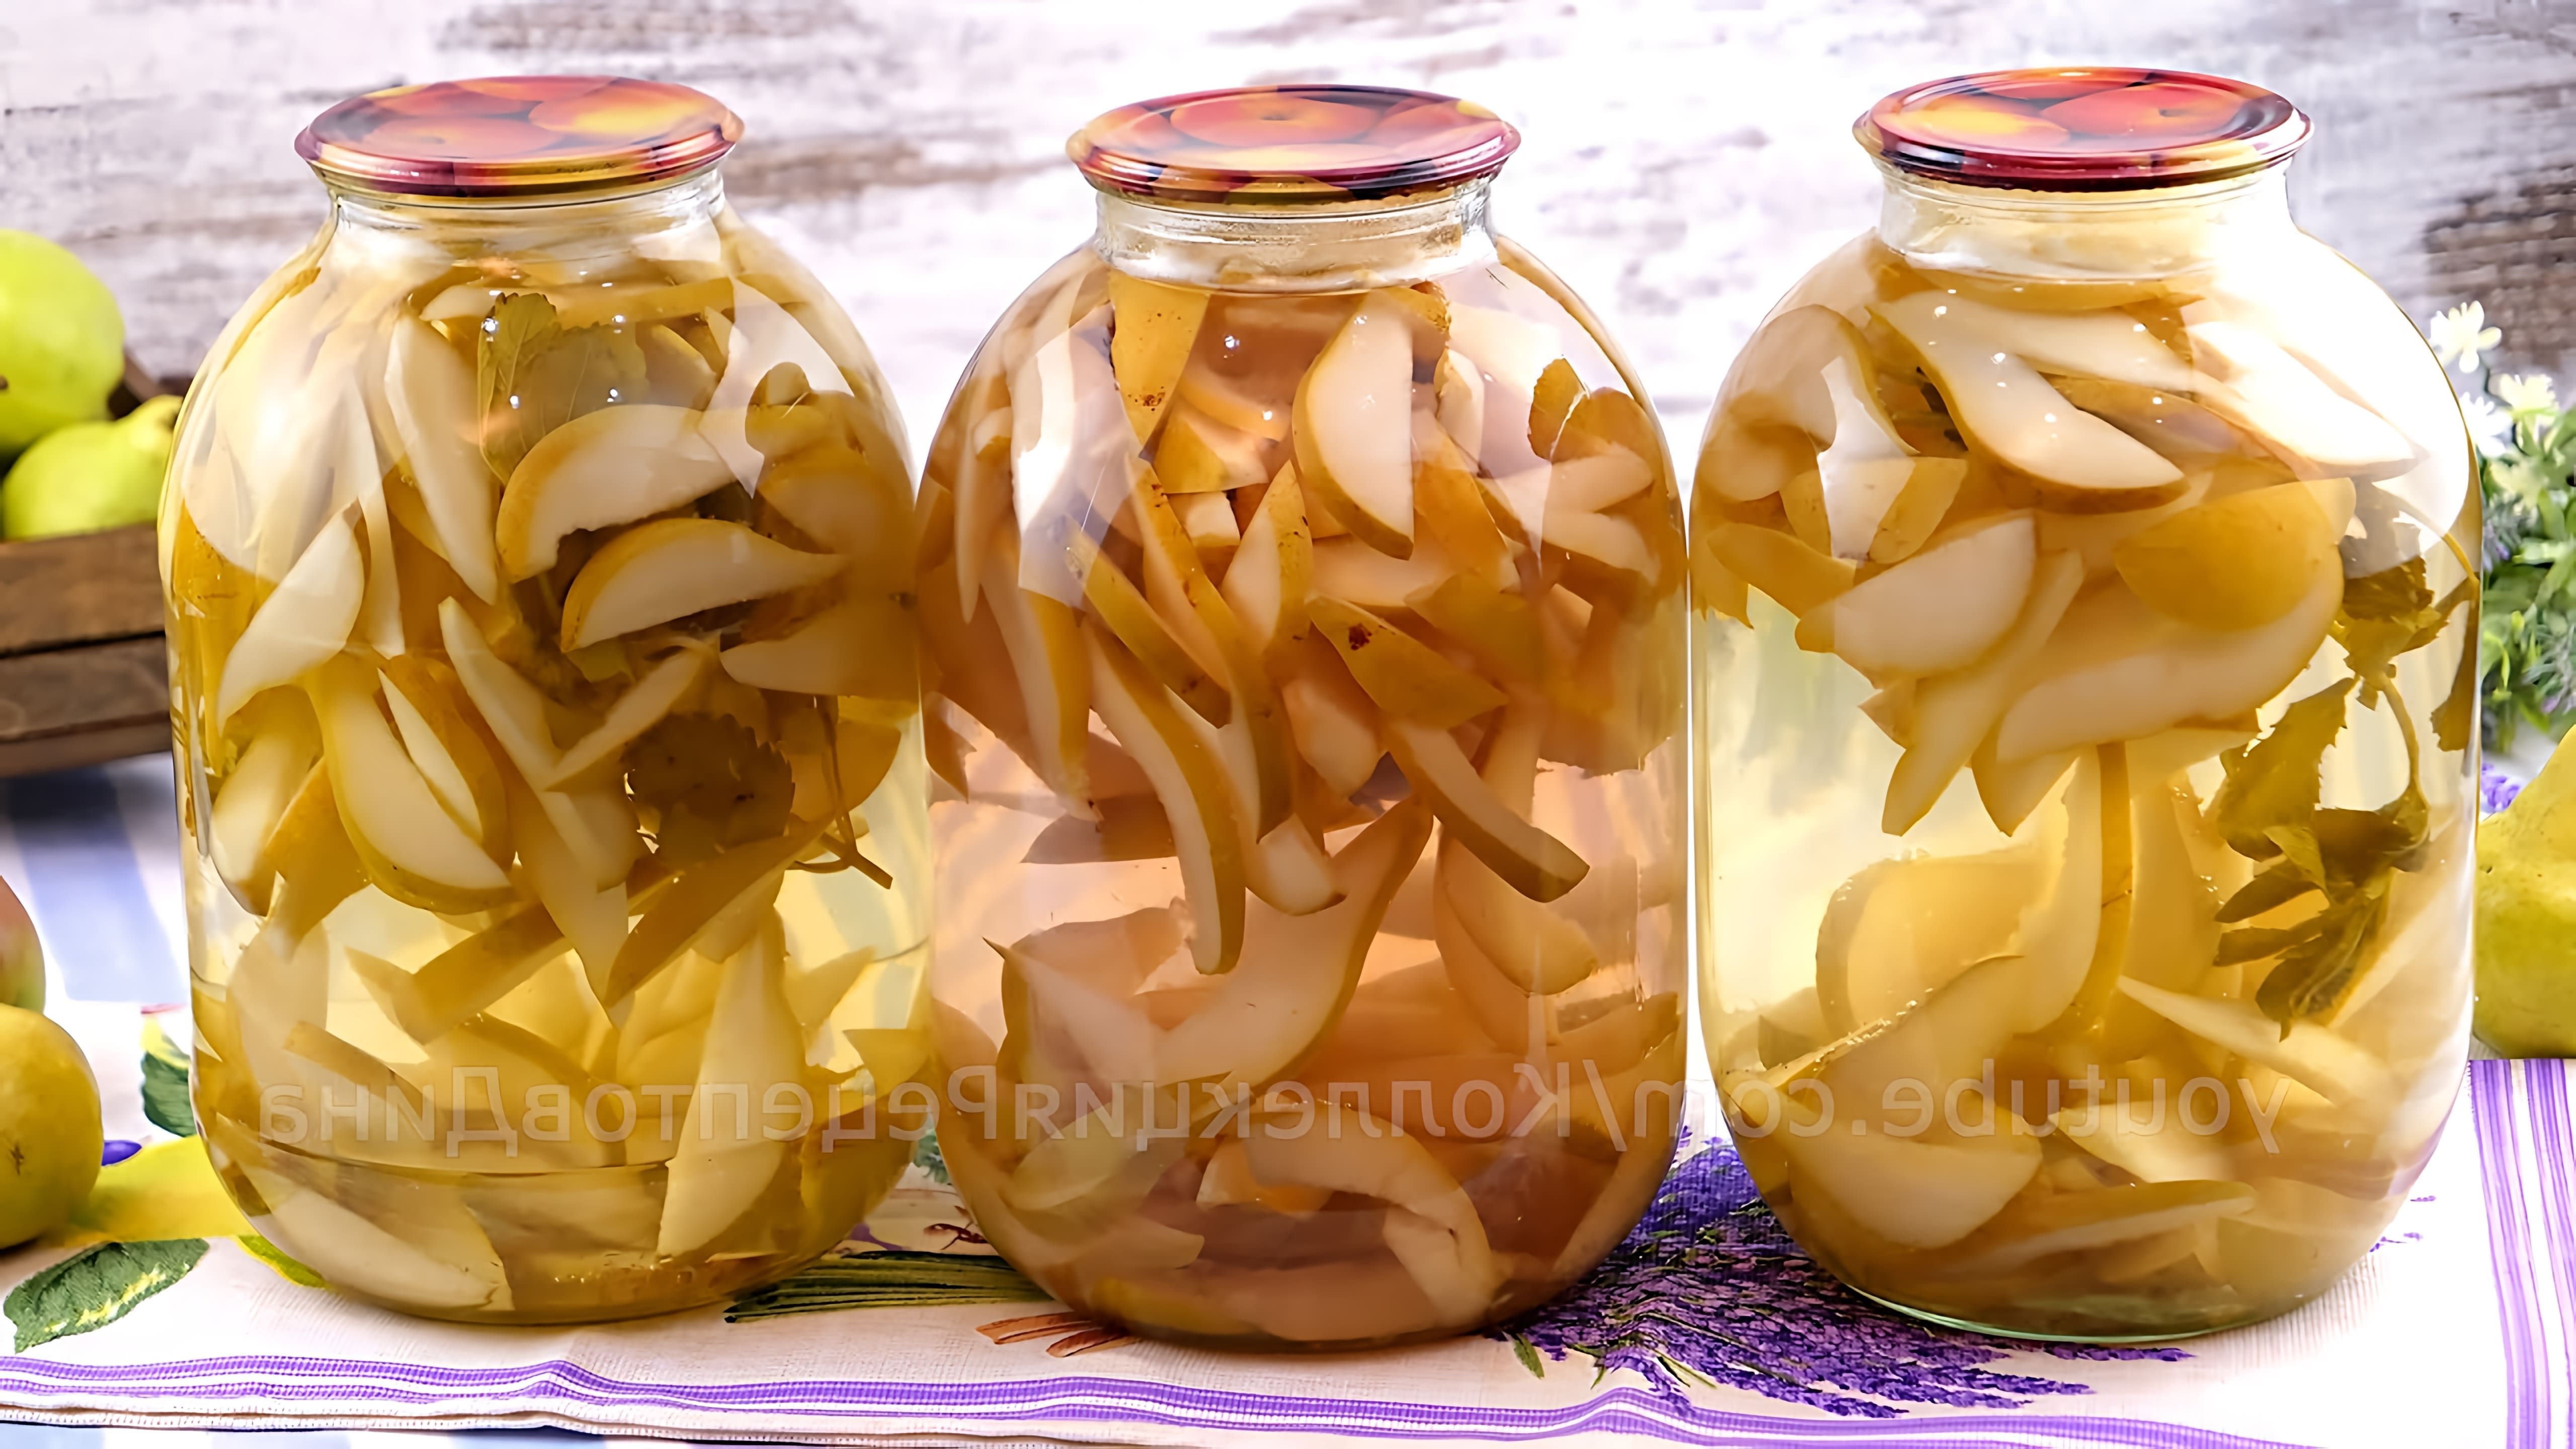 В этом видео демонстрируется процесс приготовления очень вкусного и ароматного компота из груш с лимоном и душистыми травами